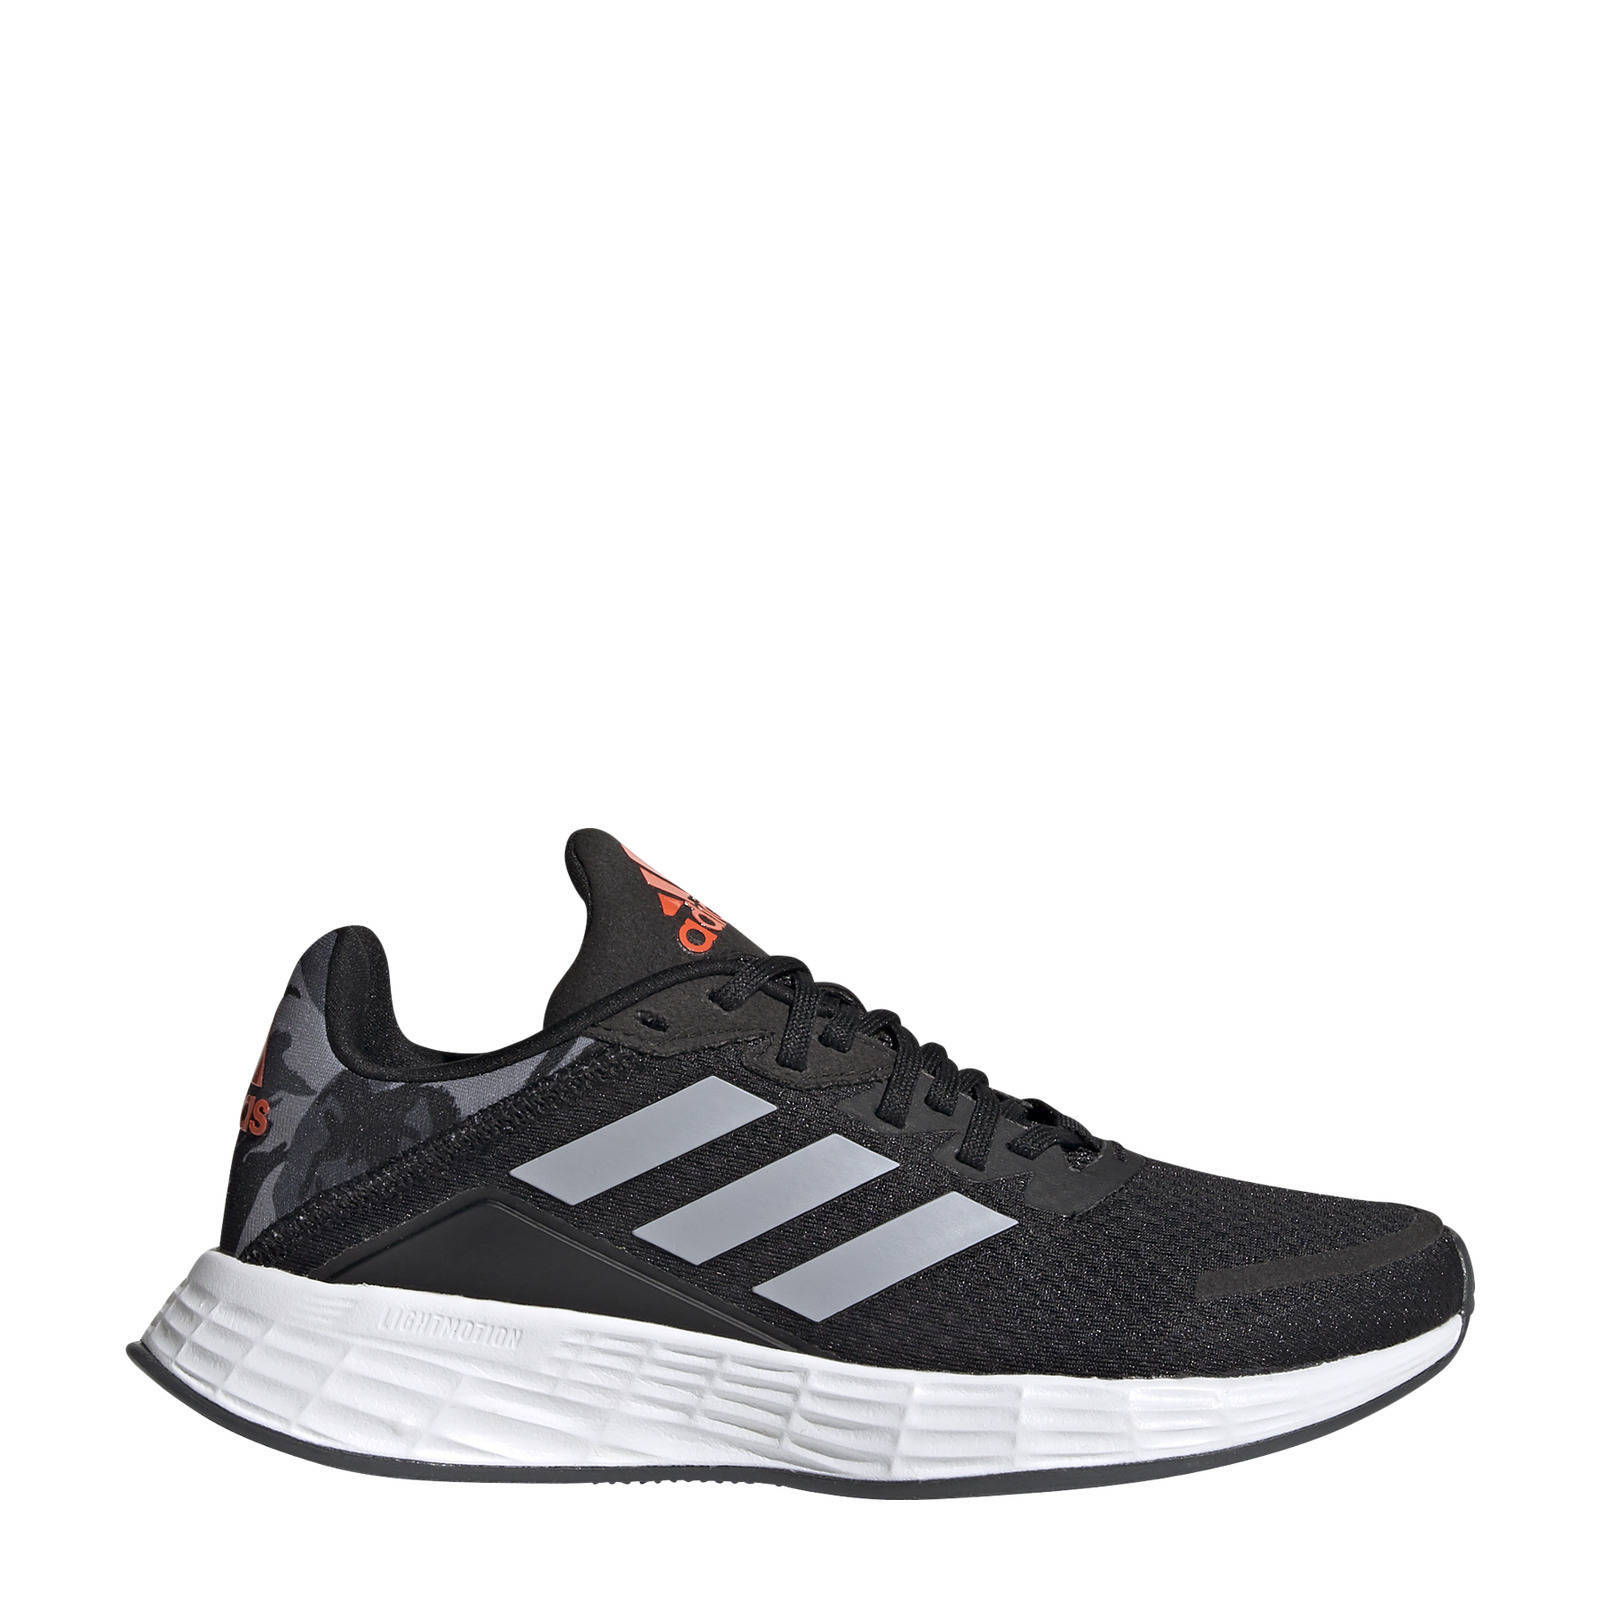 Adidas Performance Duramo SL hardloopschoenen zwart/zilver/rood kids online kopen